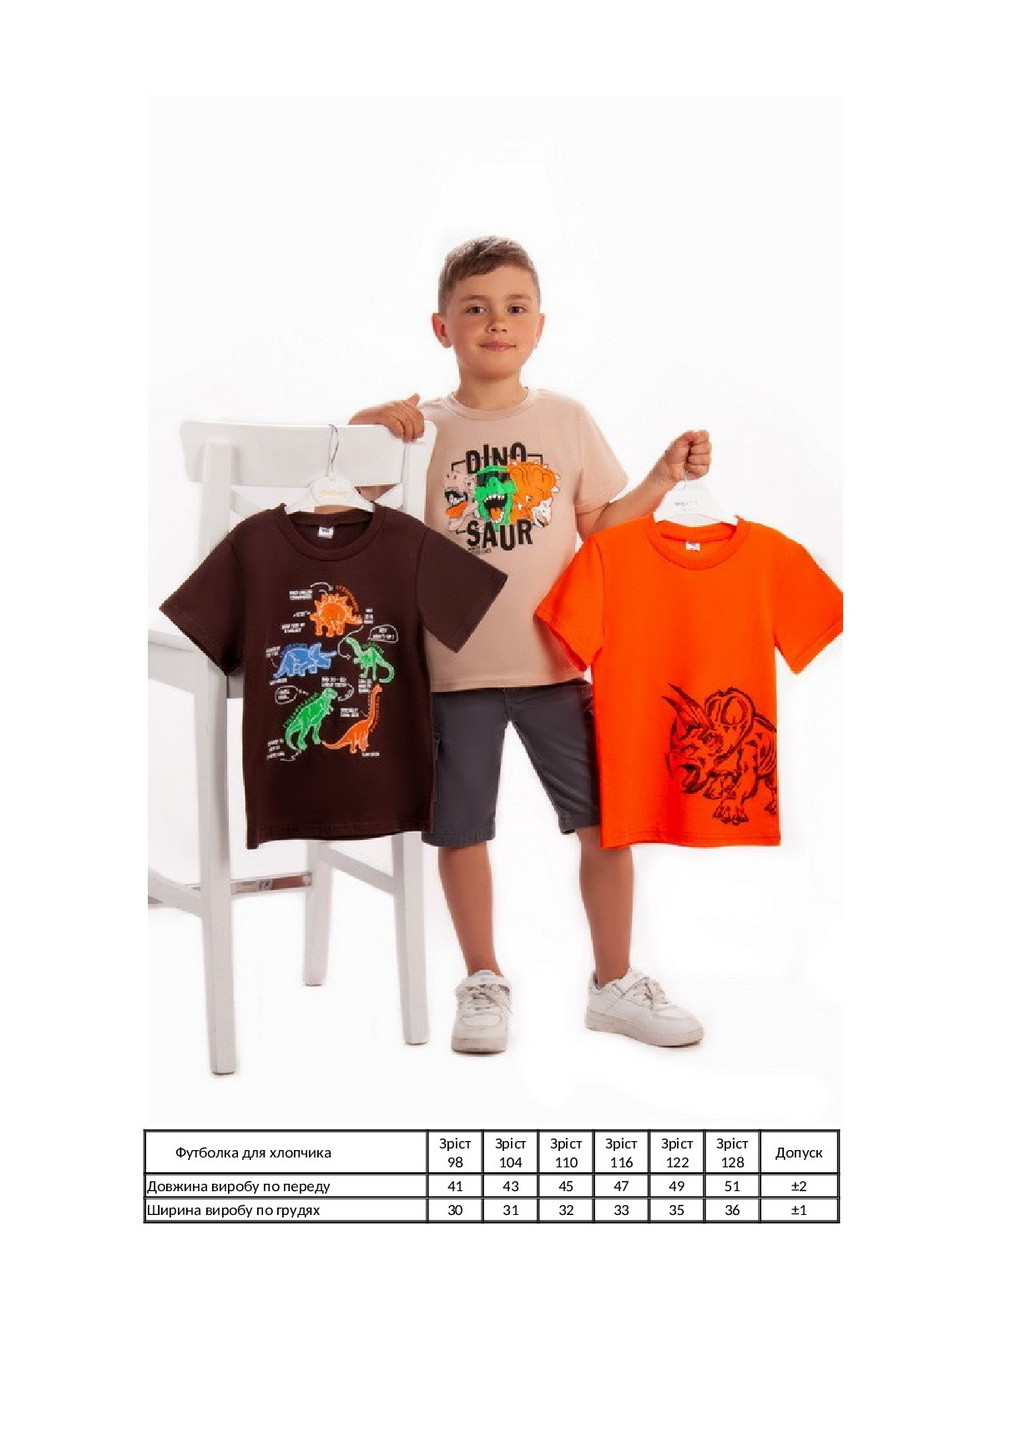 Коричневая летняя комплект для мальчиков из 3-х футболок KINDER MODE